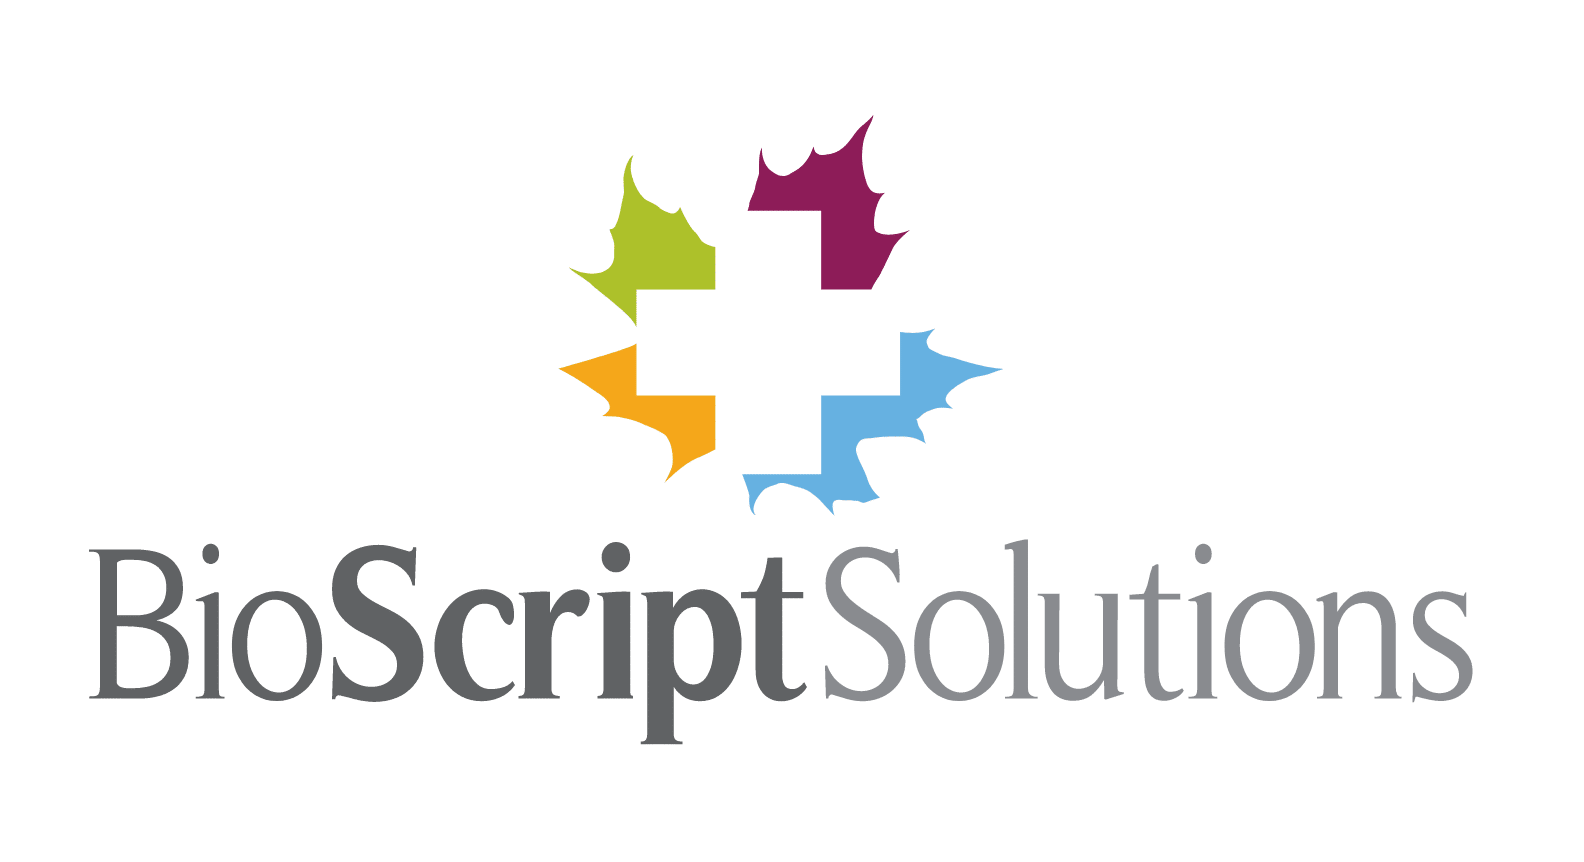 BioScript Solutions